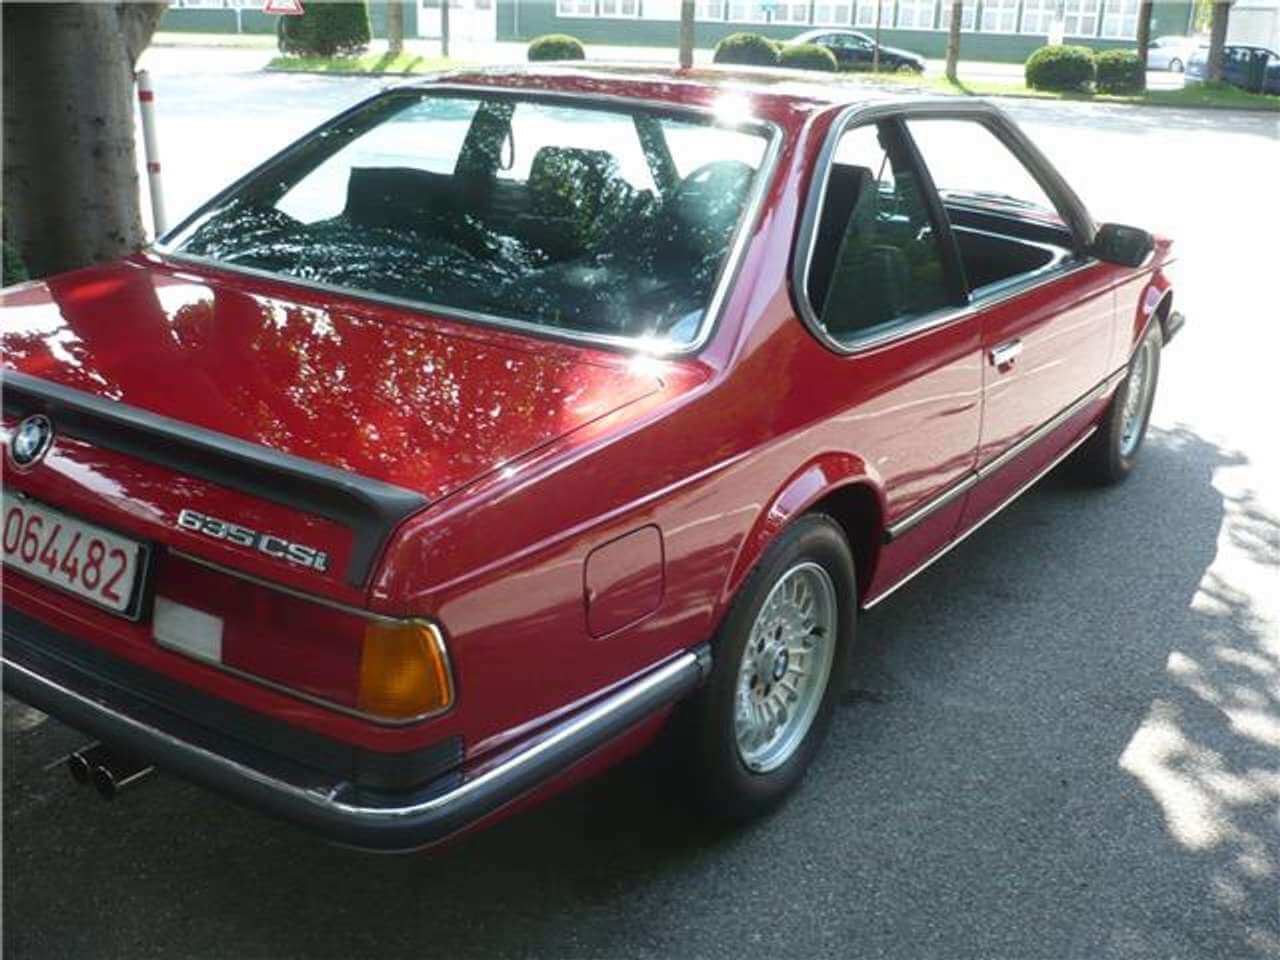 1985 Model BMW 635 CSi Sadece 428 Km Kullanılmış